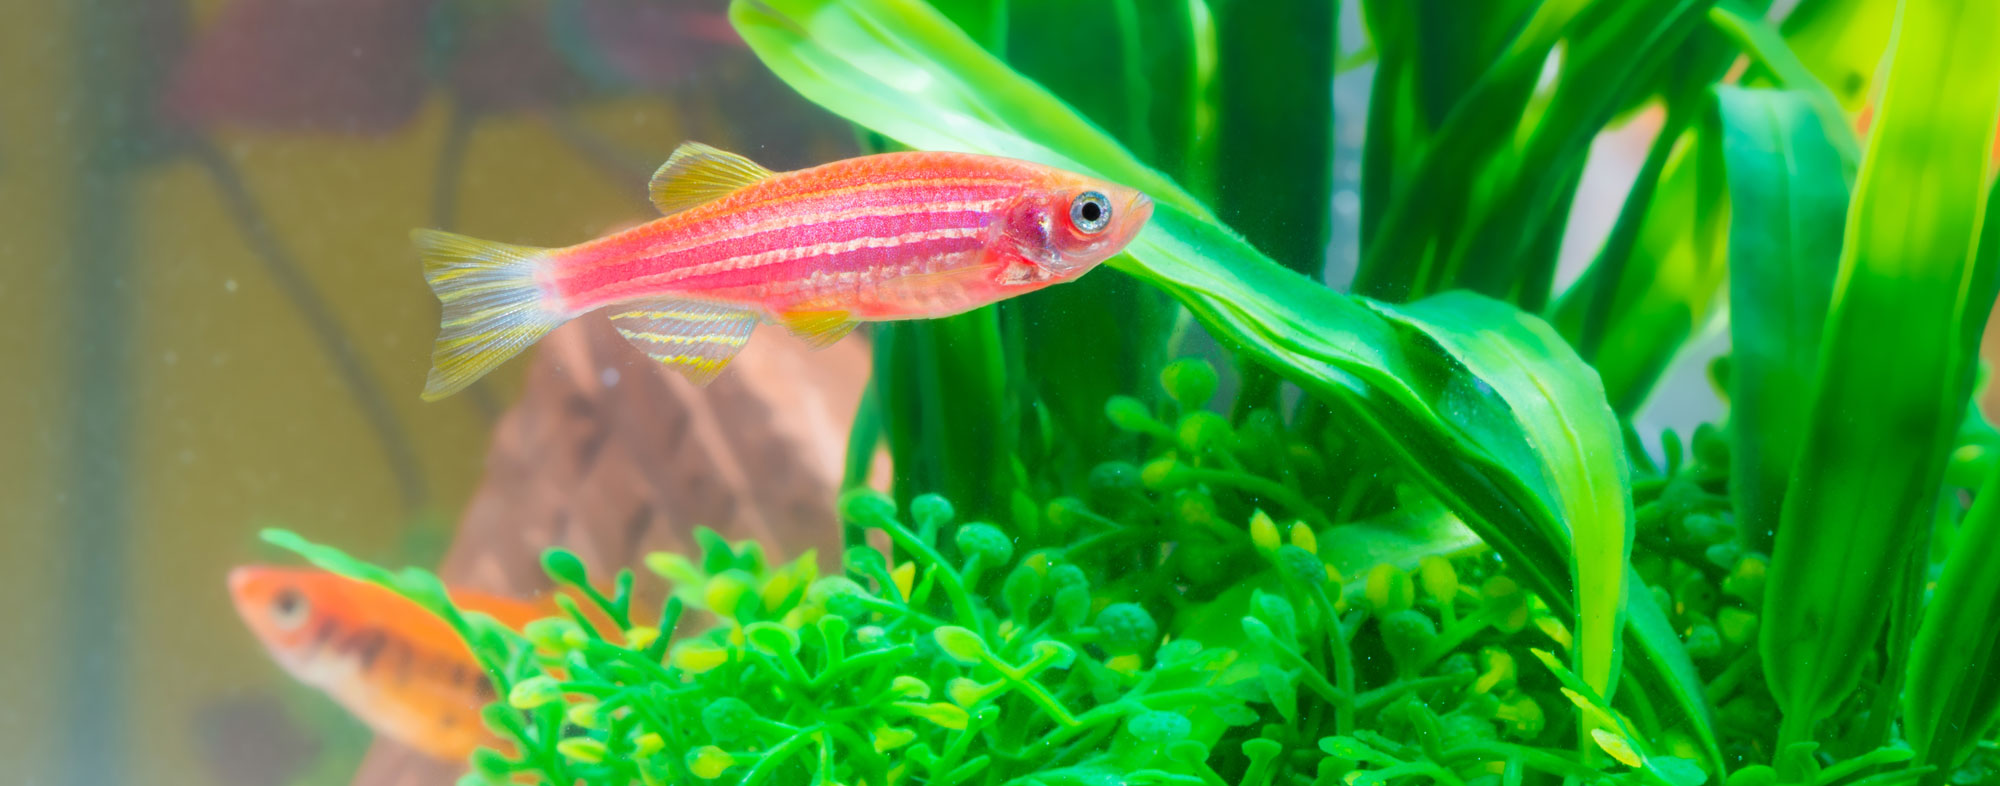 Pair of fish swimming around live aquarium plants in their habitat